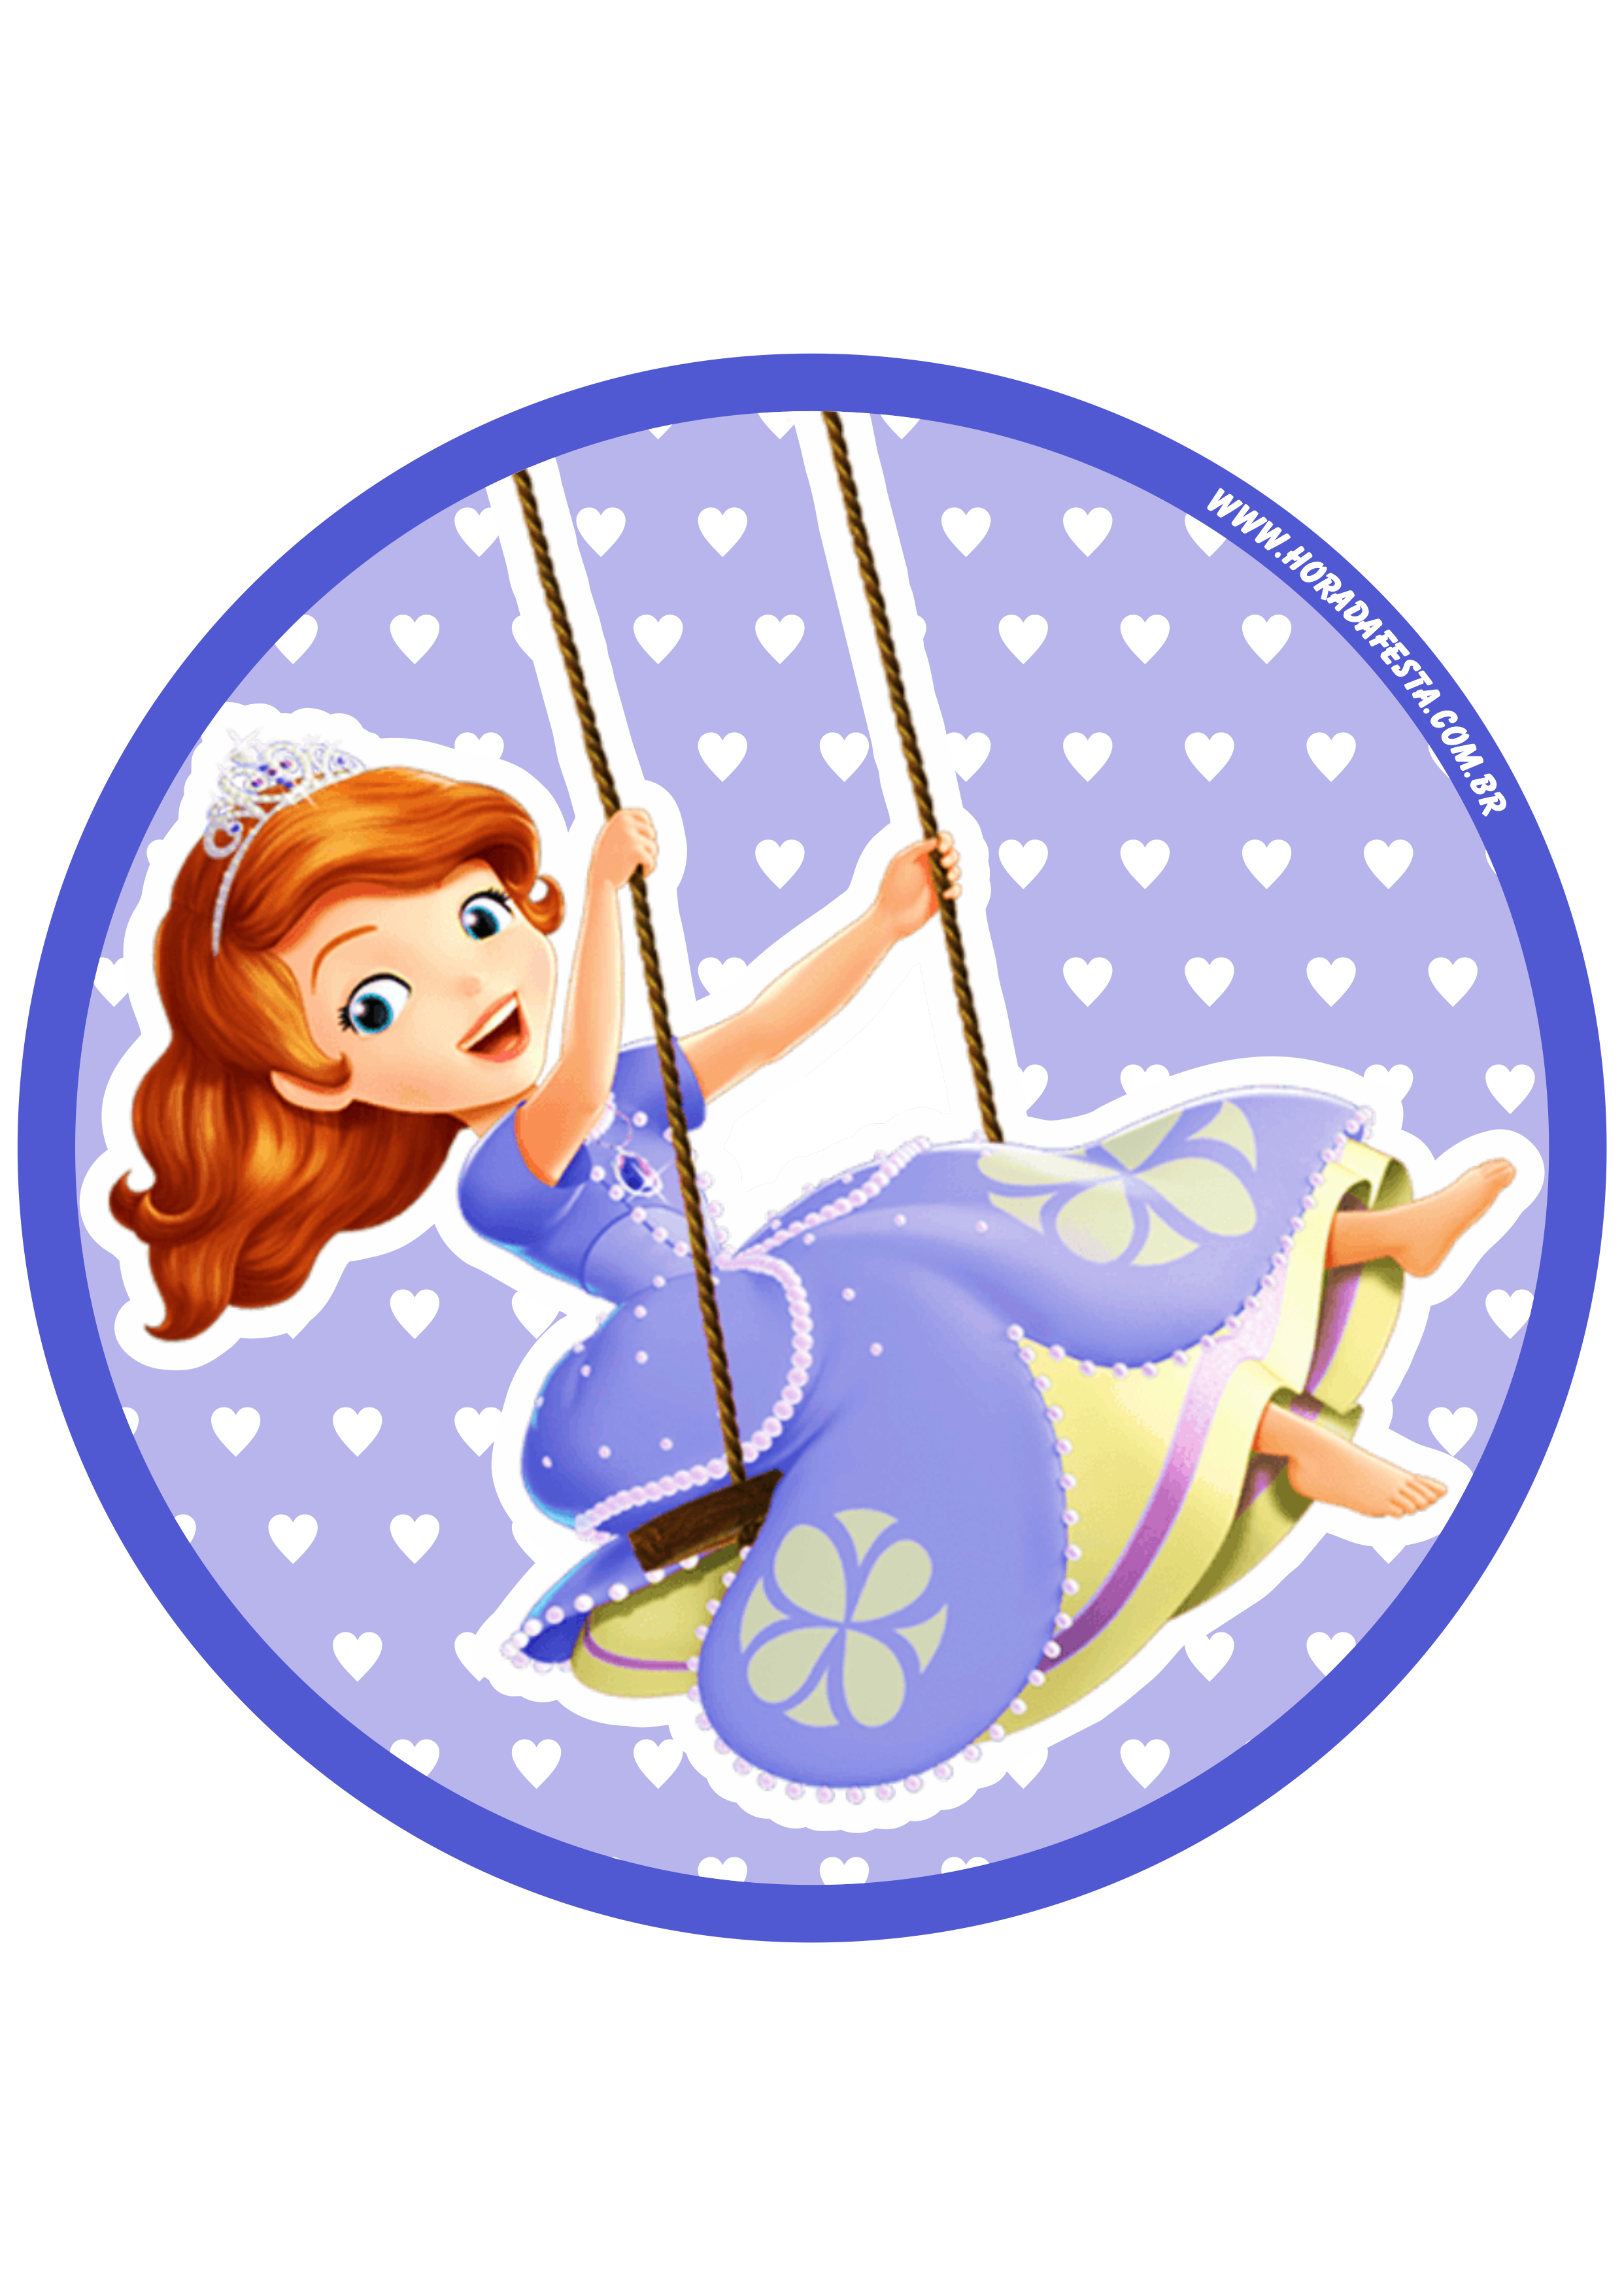 Princesa Sofia adesivo redondo tag sticker painel festa de aniversário infantil menina artigos de papelaria png